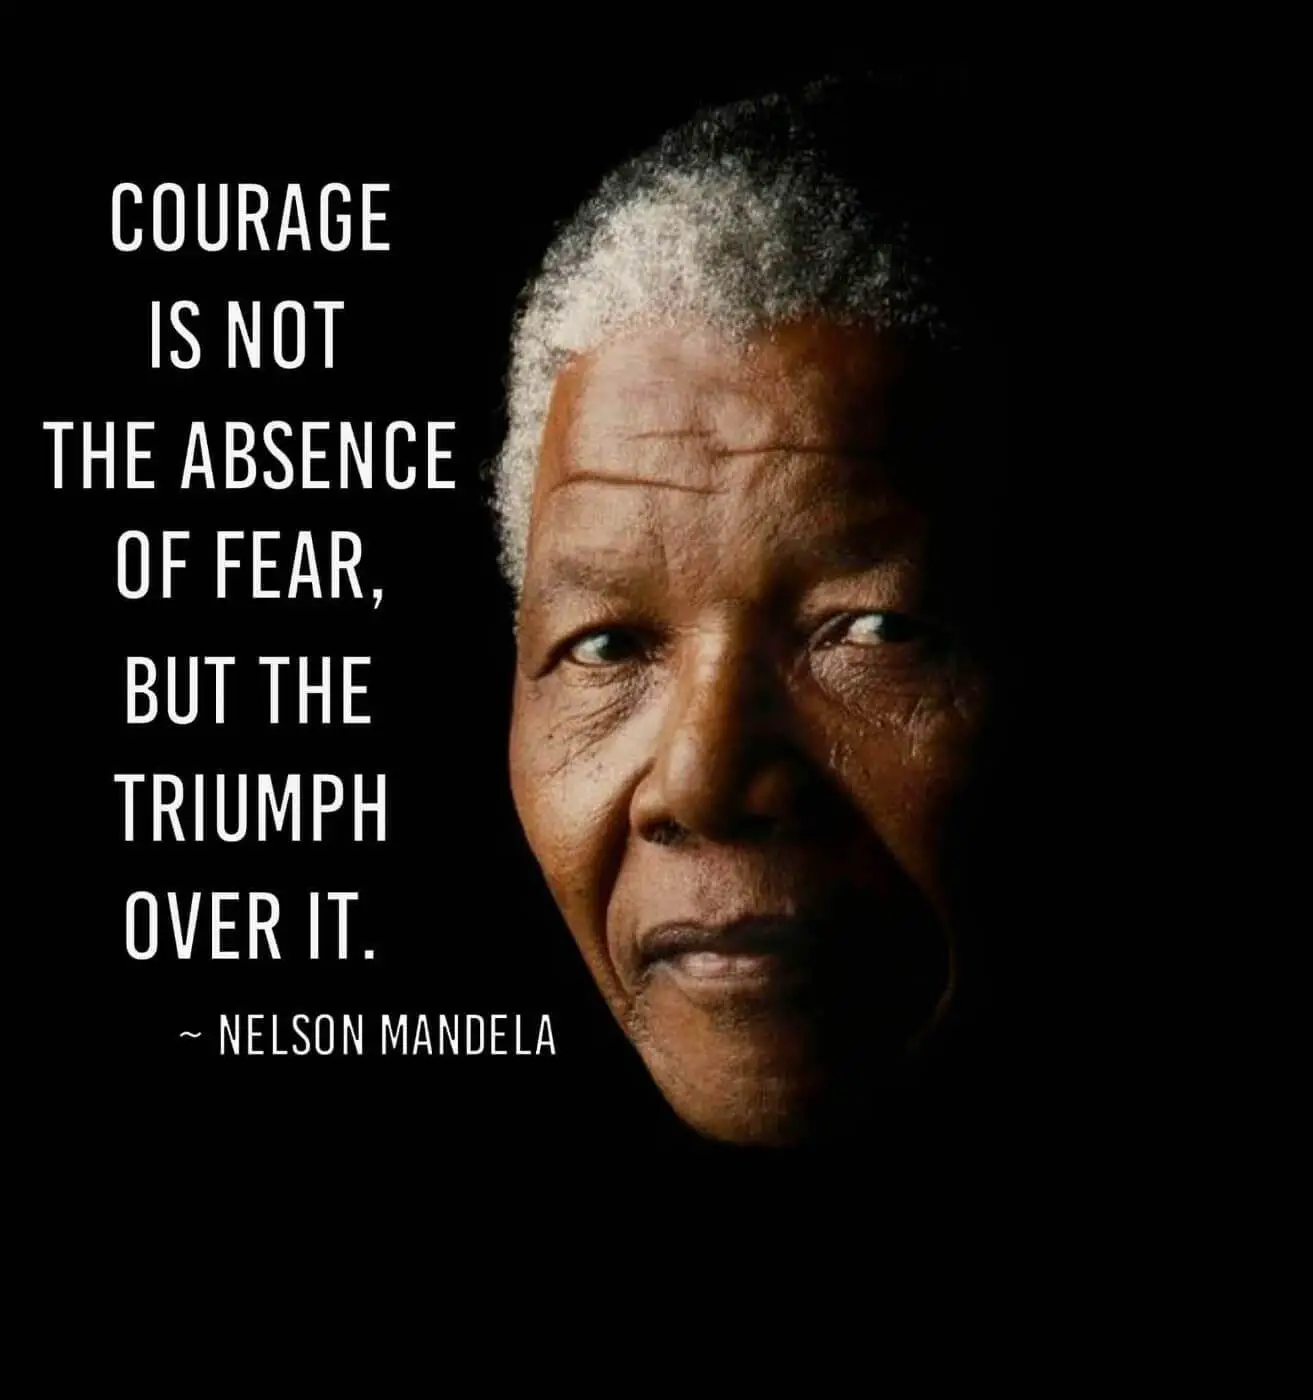 courage_is_not_absence_of_fear_7c6d7e51-720b-4ca0-b7bd-af883715fc8f-1